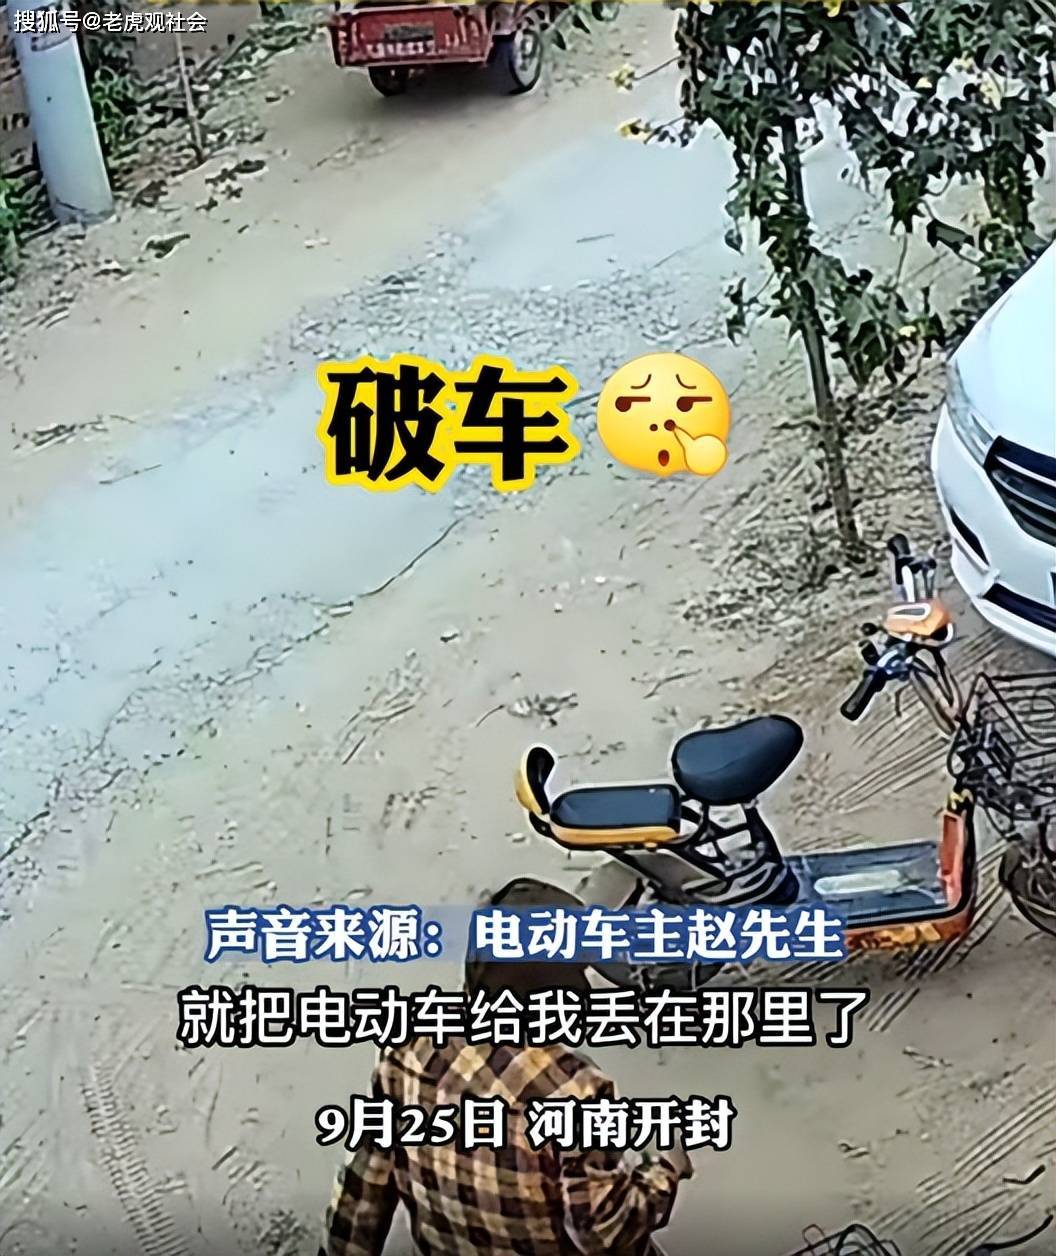 河南开封：大妈骑电动车偷电动车，结果偷来的车更破，立马丢弃在路边跑路了